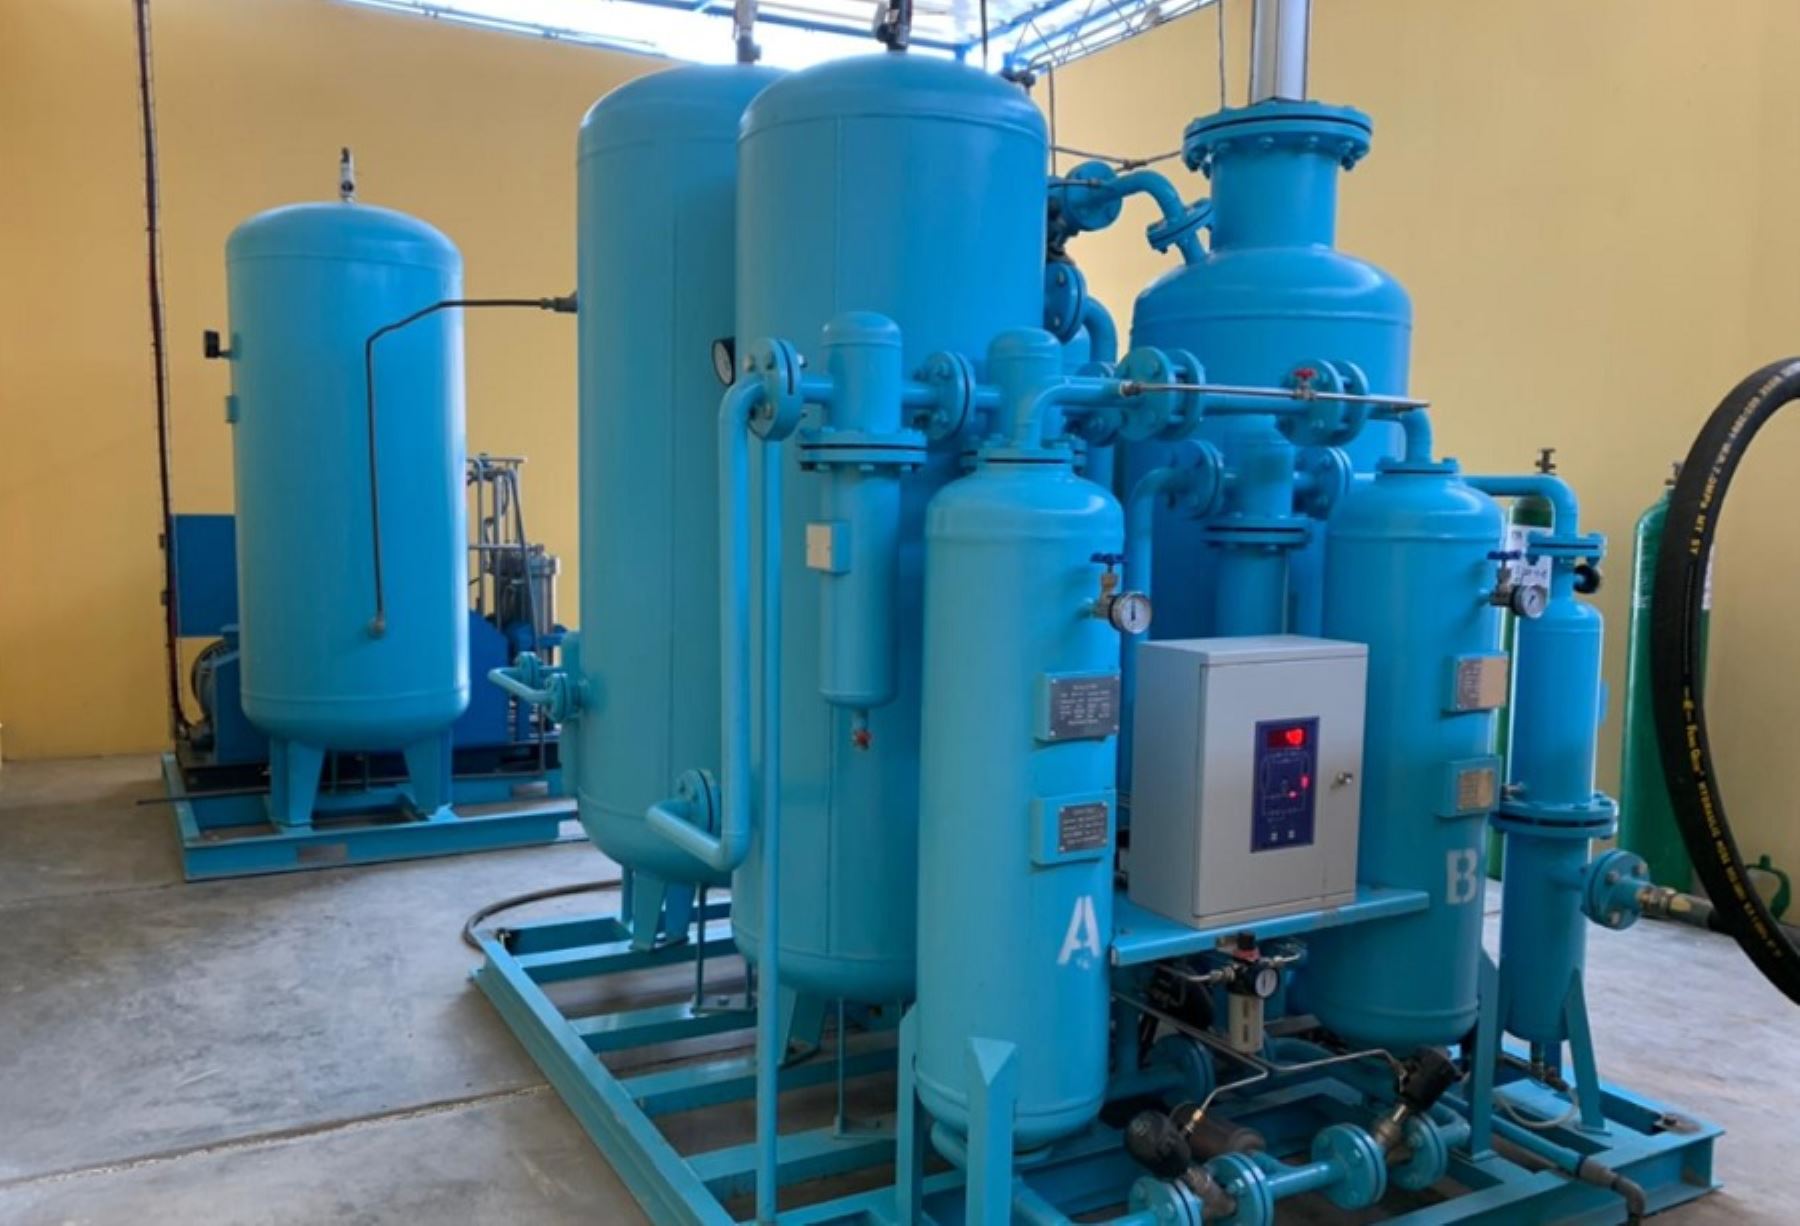 La Municipalidad Provincial de Huarochirí inauguró su primera planta generadora de oxígeno medicinal con capacidad para producir más de 45 balones diarios de este recurso vital para atender la demanda de los pacientes con covid-19.